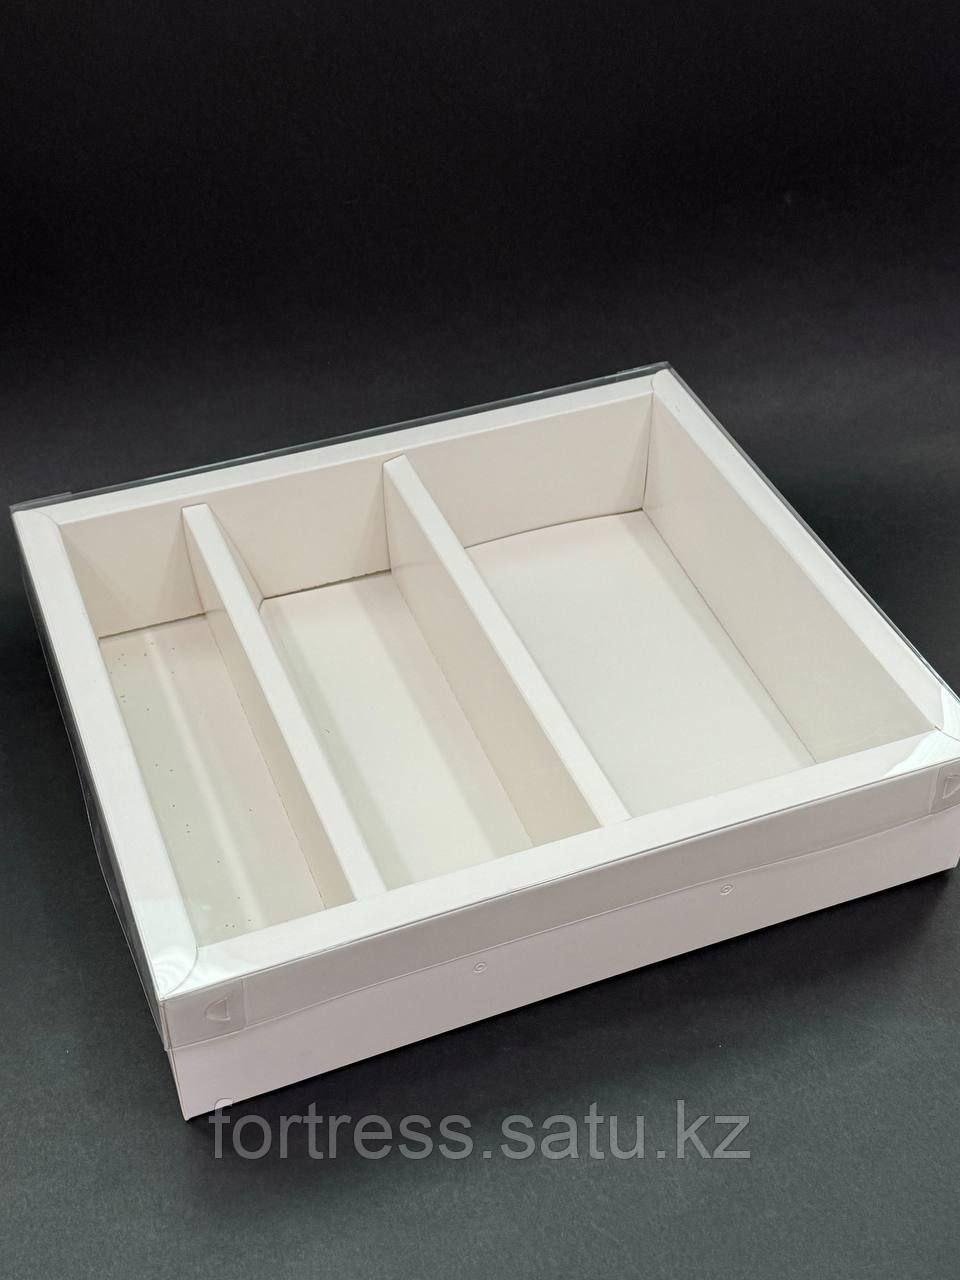 Коробка с прозрачной крышкой, белая 3 деления 29,5*25,5*6,5 (26,5*22,5*6,5)